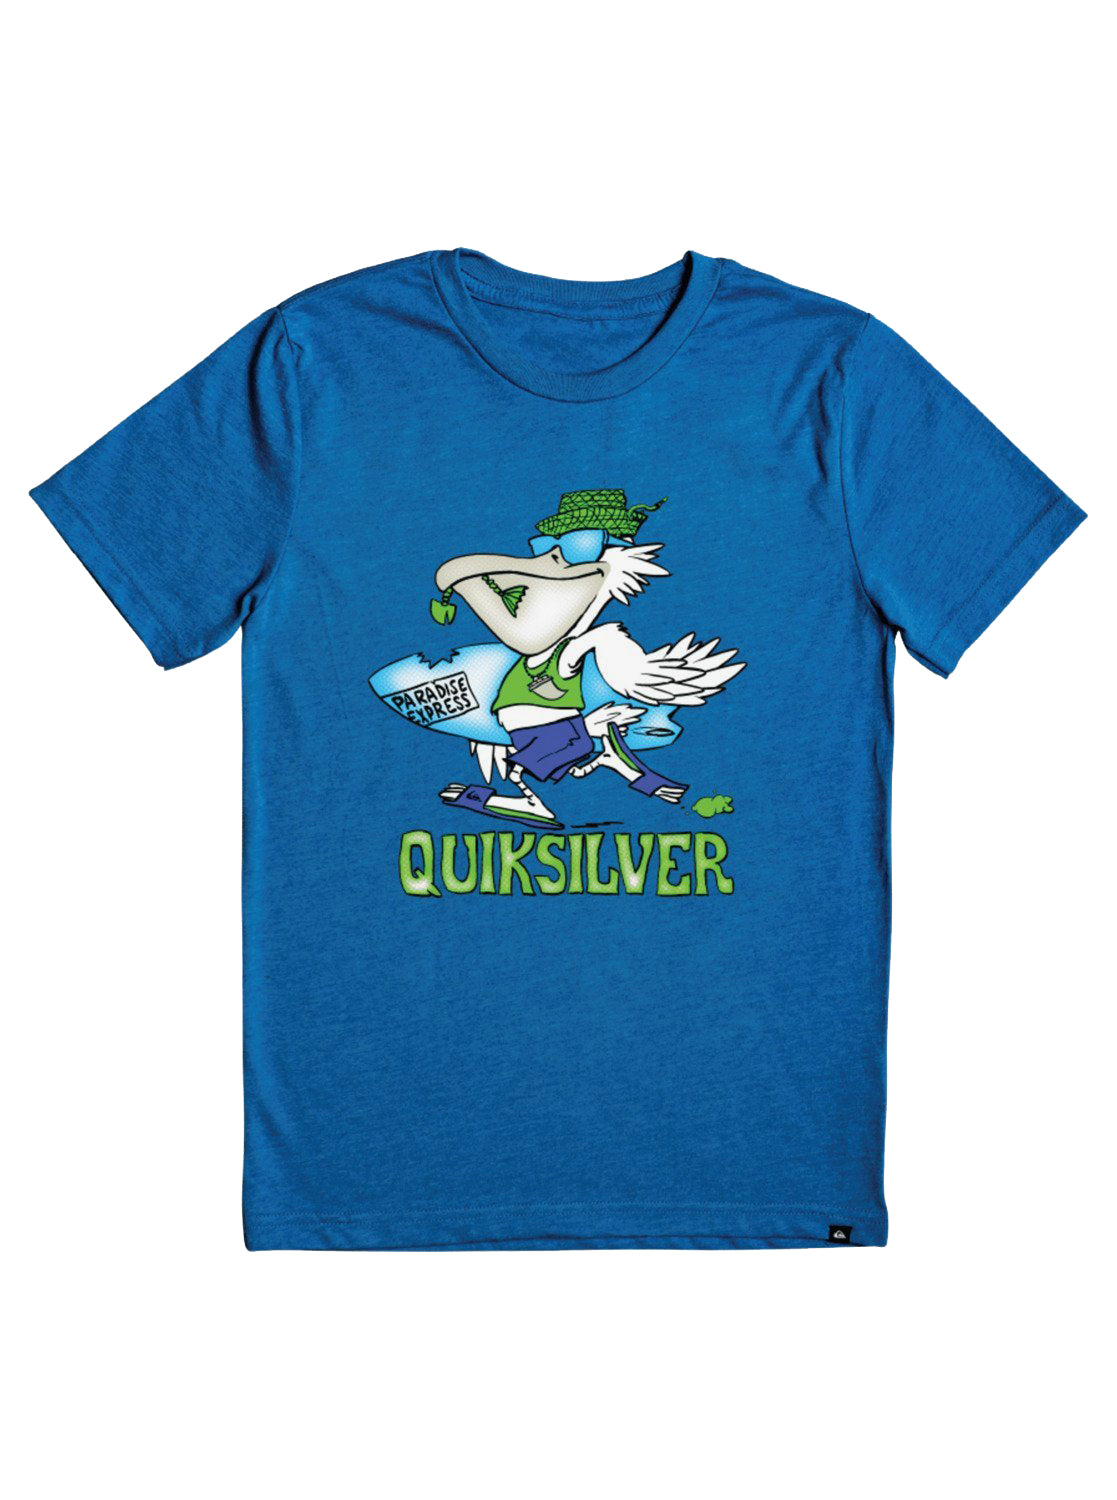 Quiksilver Kids Pelican Shred SS Tee BQVH 6